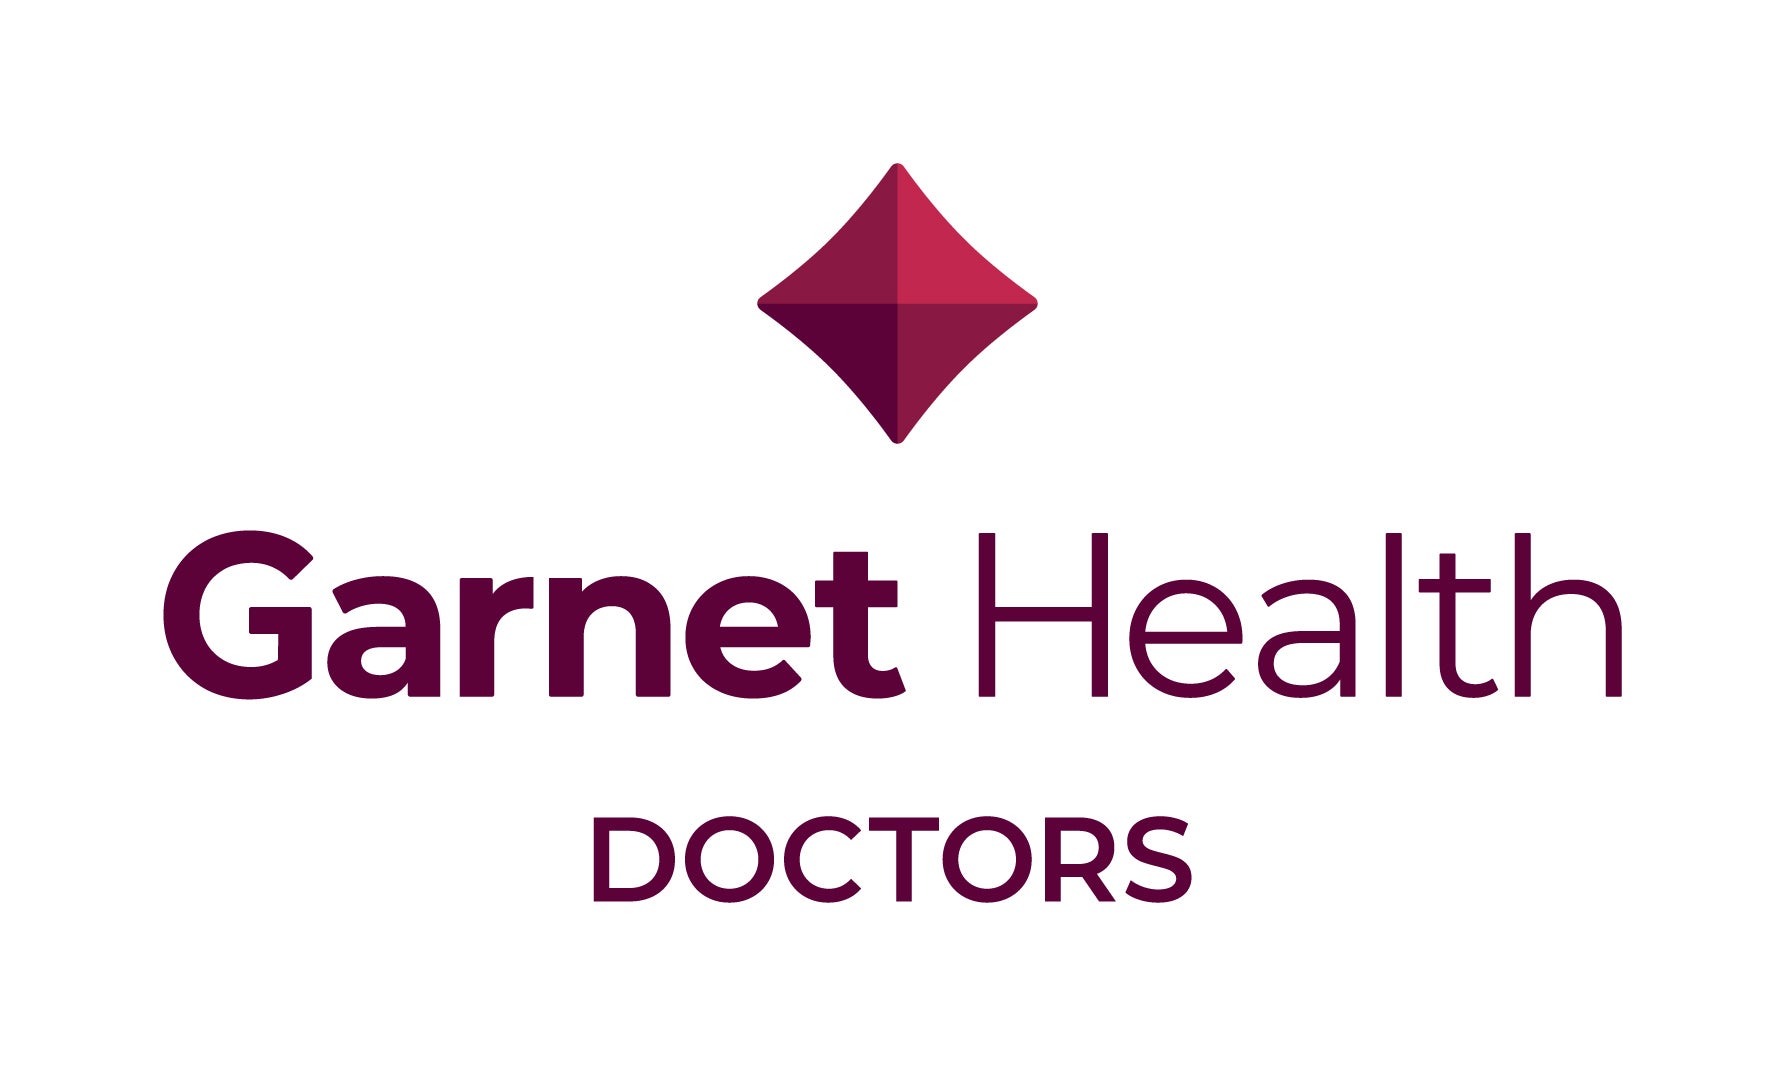 Garnet Health Doctors